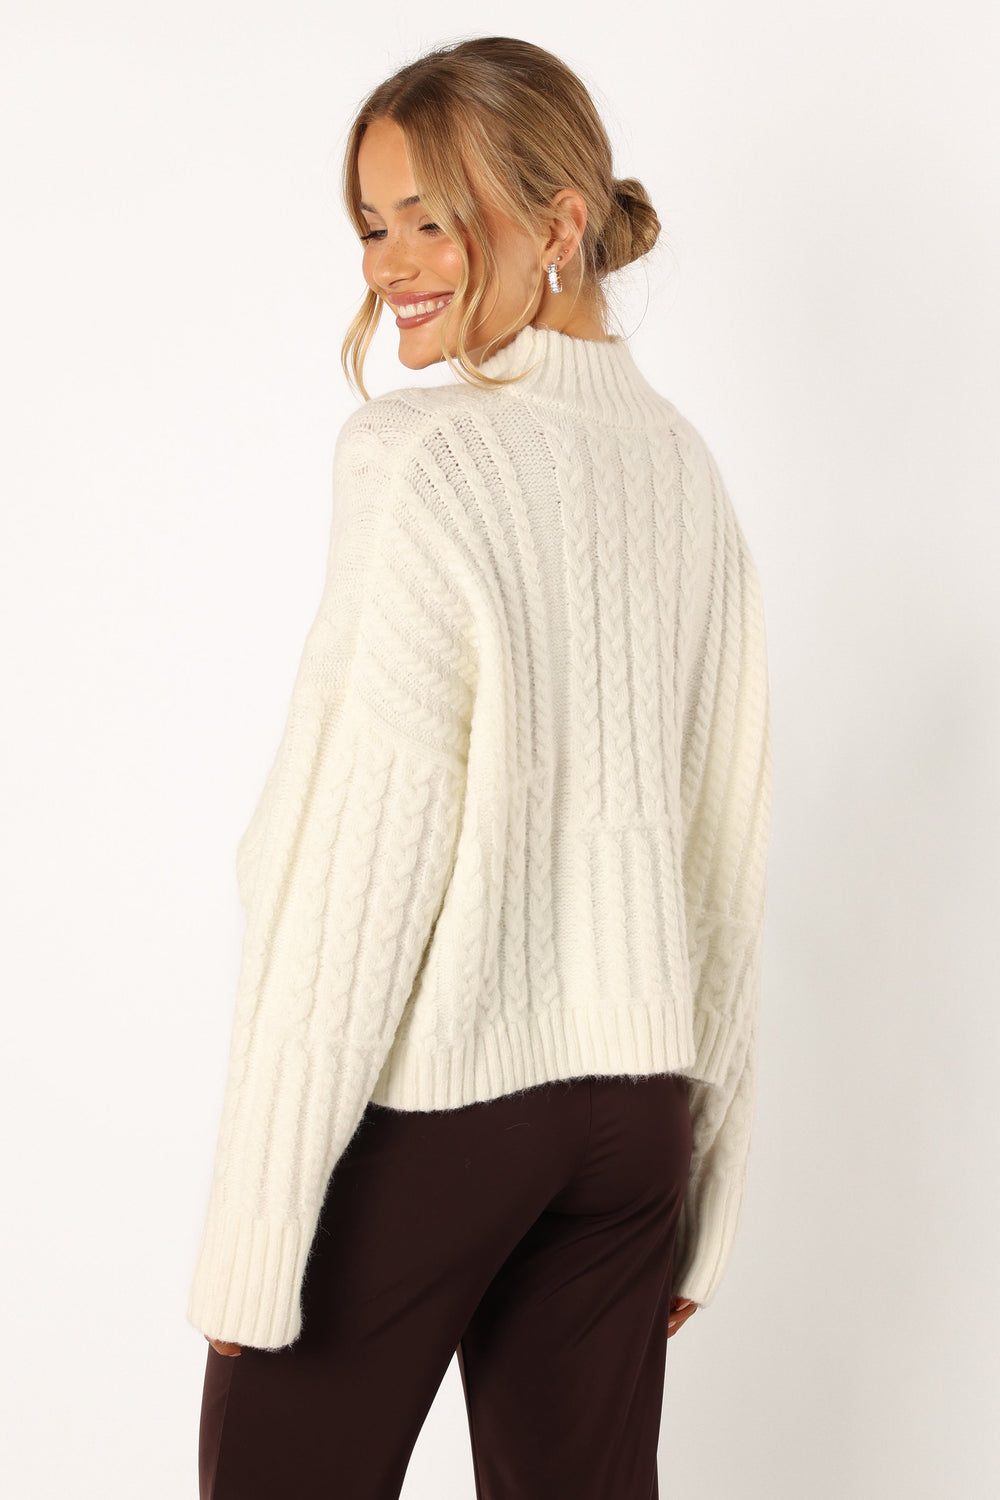 Skye Knit Sweater - White - Petal & Pup USA